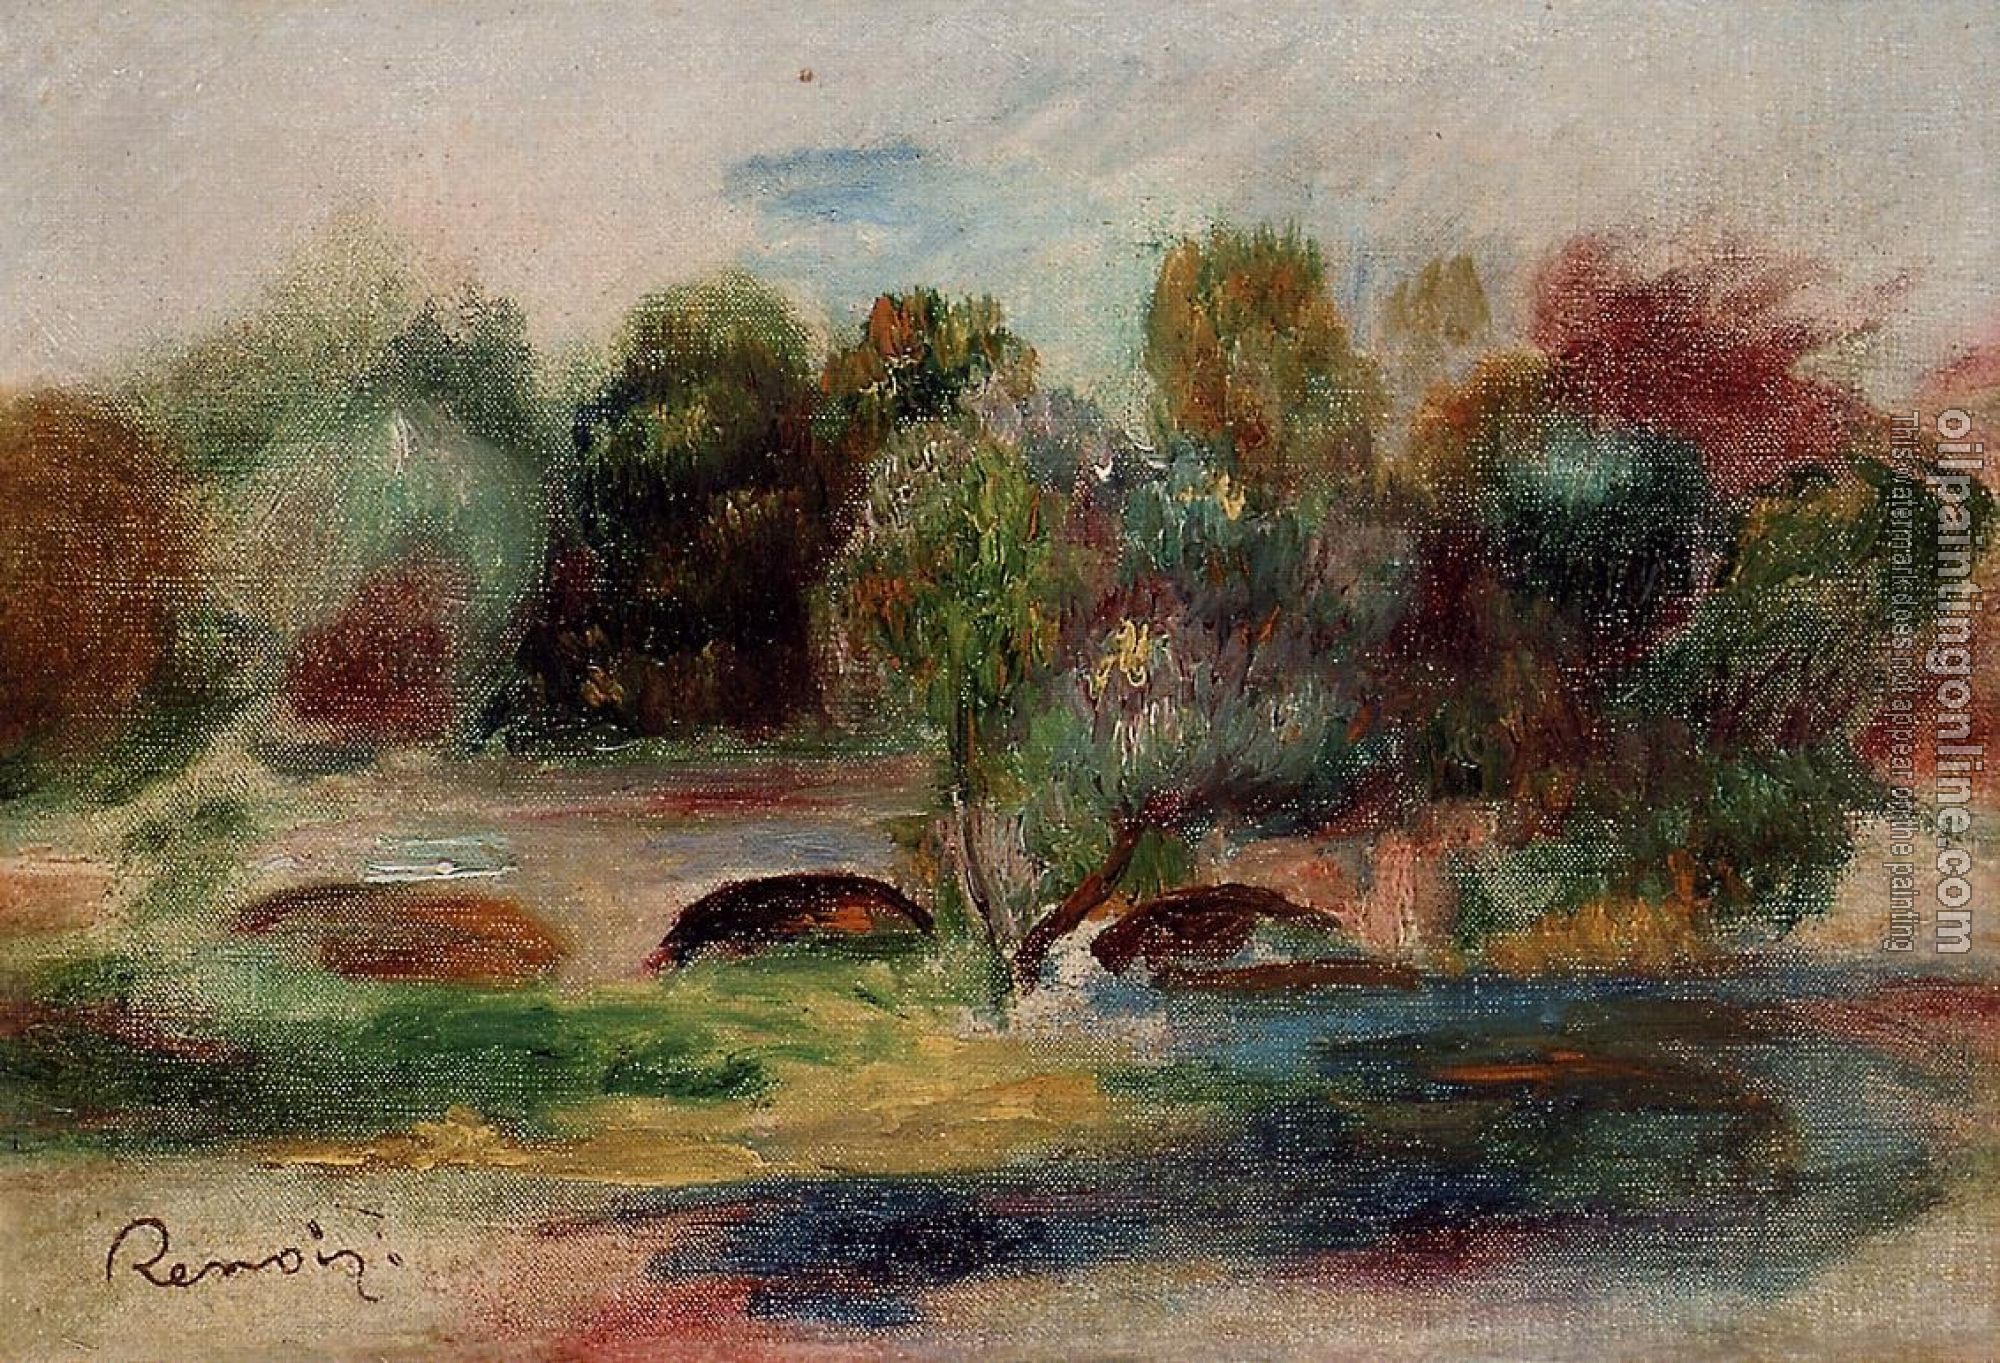 Renoir, Pierre Auguste - Landscape with Bridge